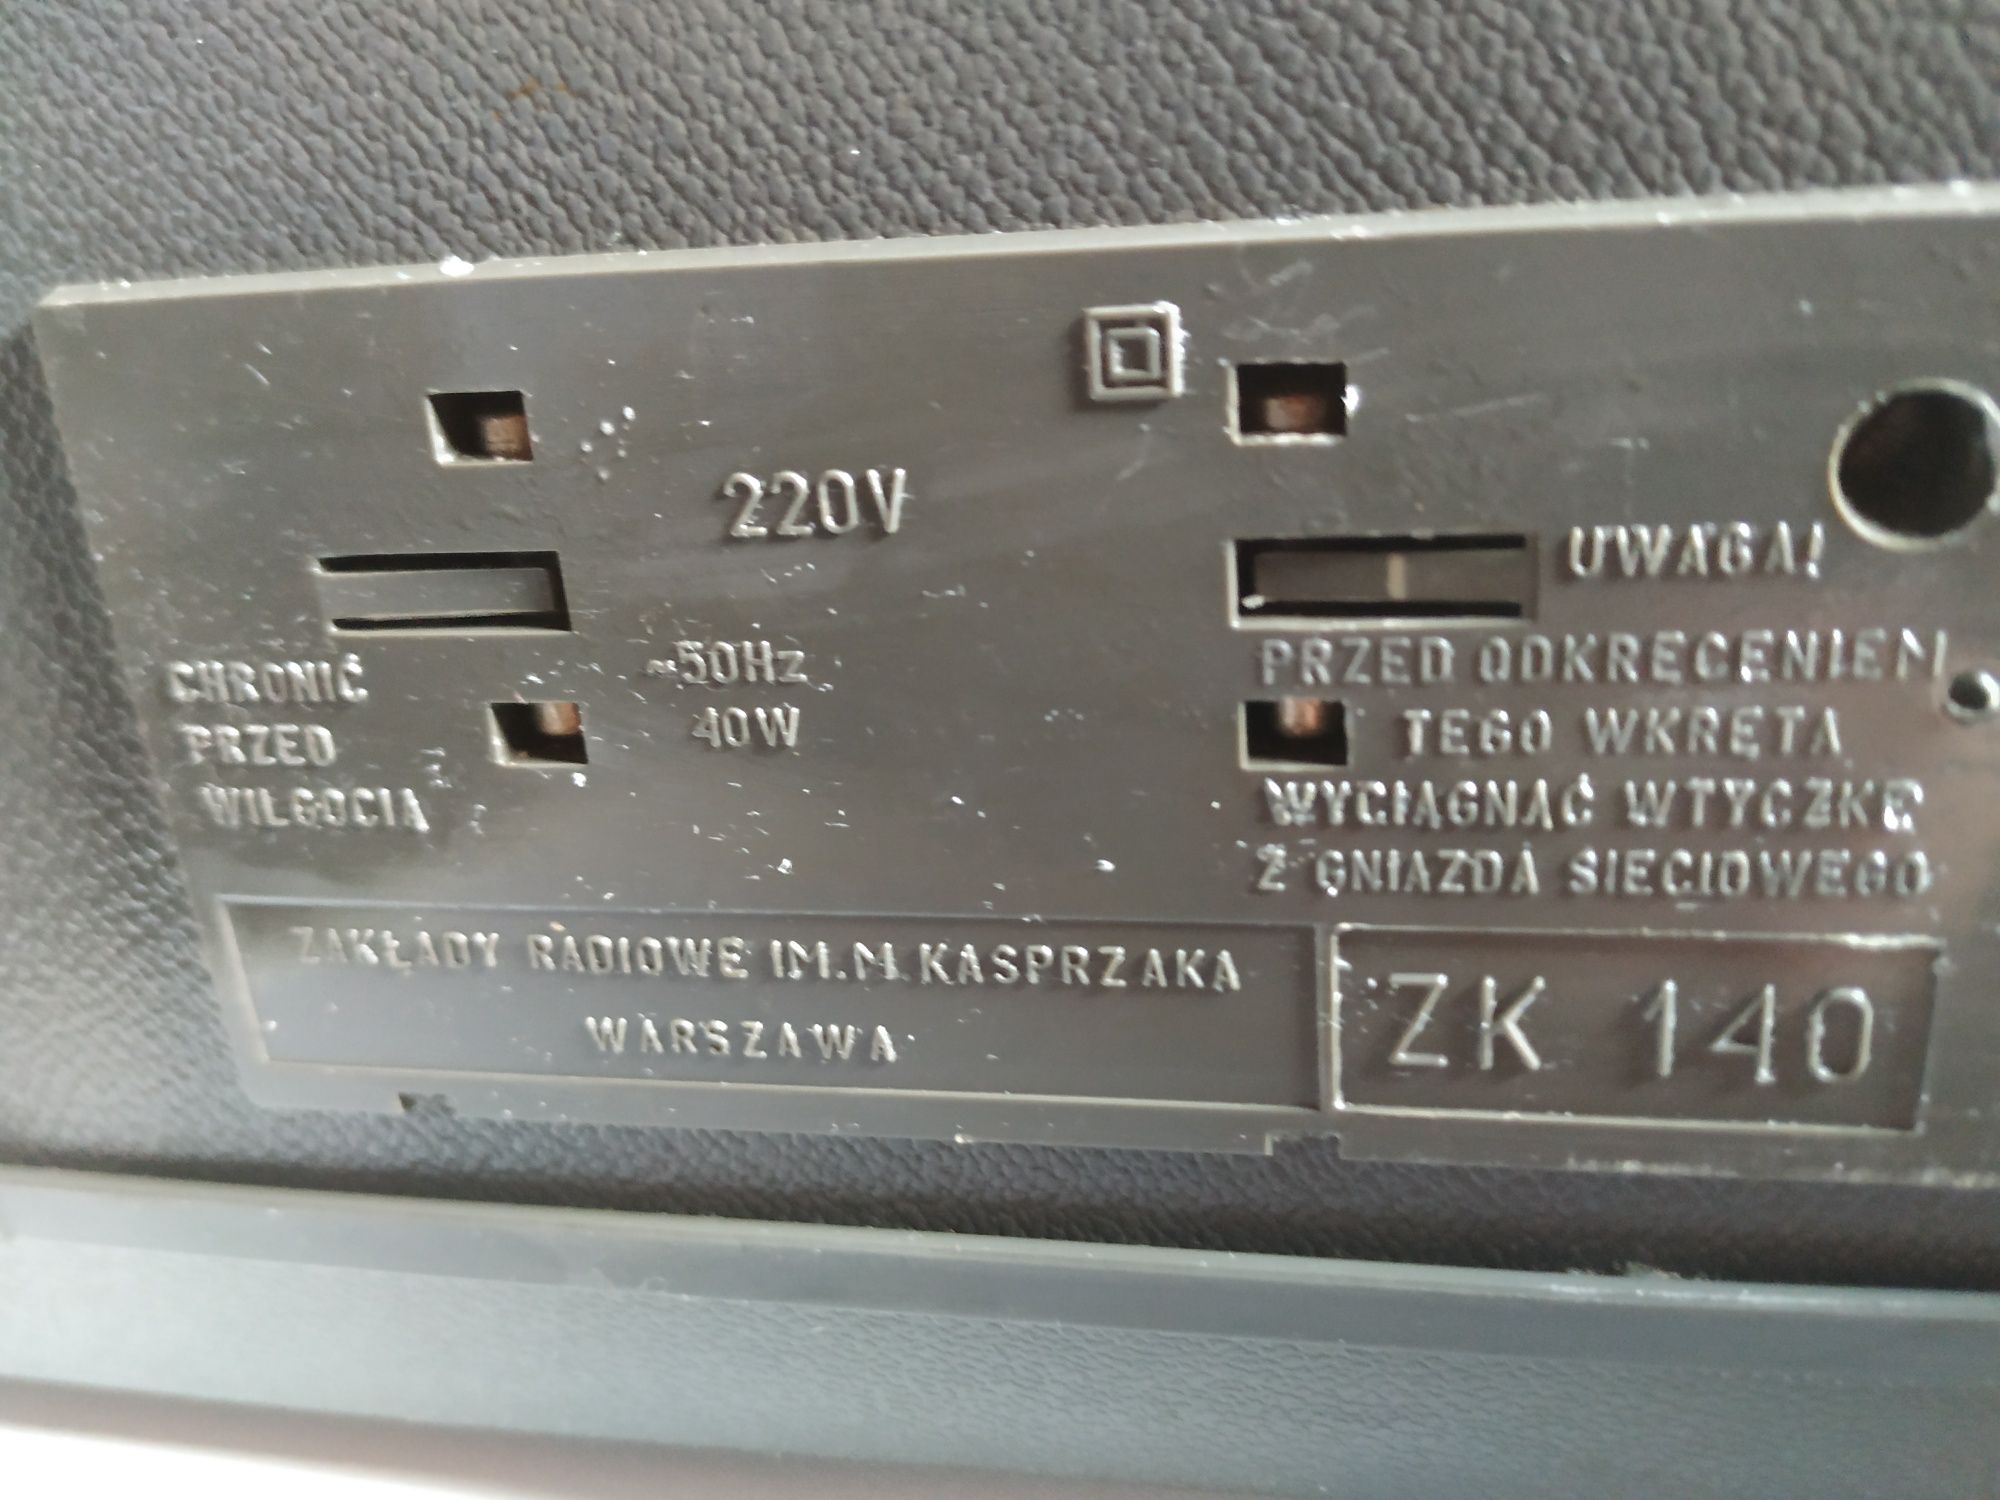 Magnetofon szpulowy ZK 140 T
 UNITRA ZRK
Sygnowany na obudowie logo:UN